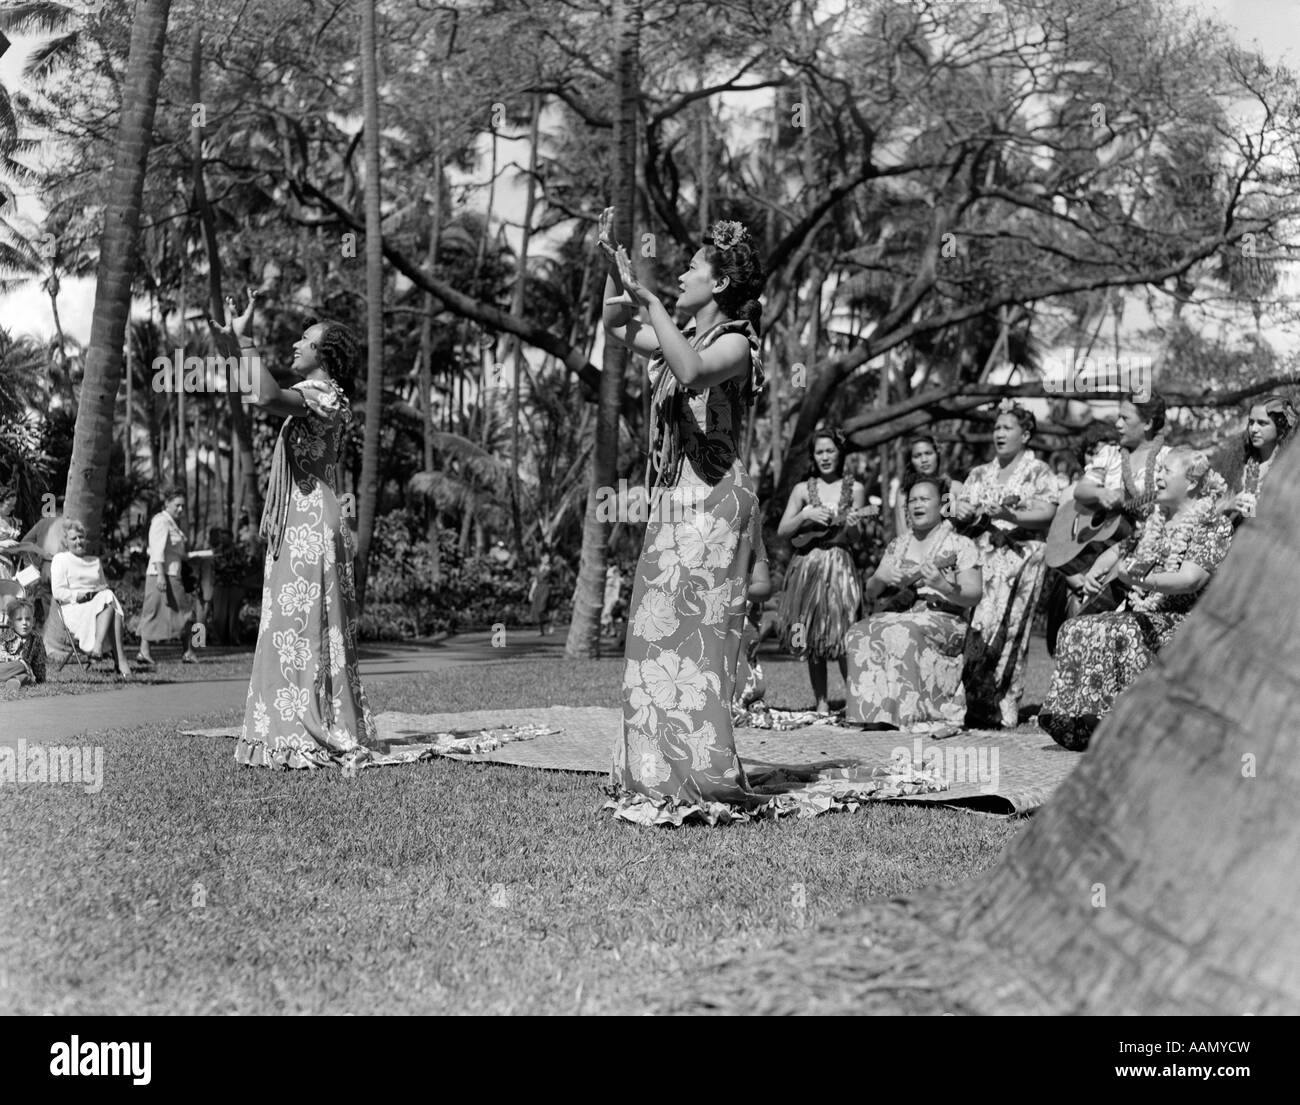 1930s NATIVE HULA MUSIC DANCE SHOW HAWAII Stock Photo